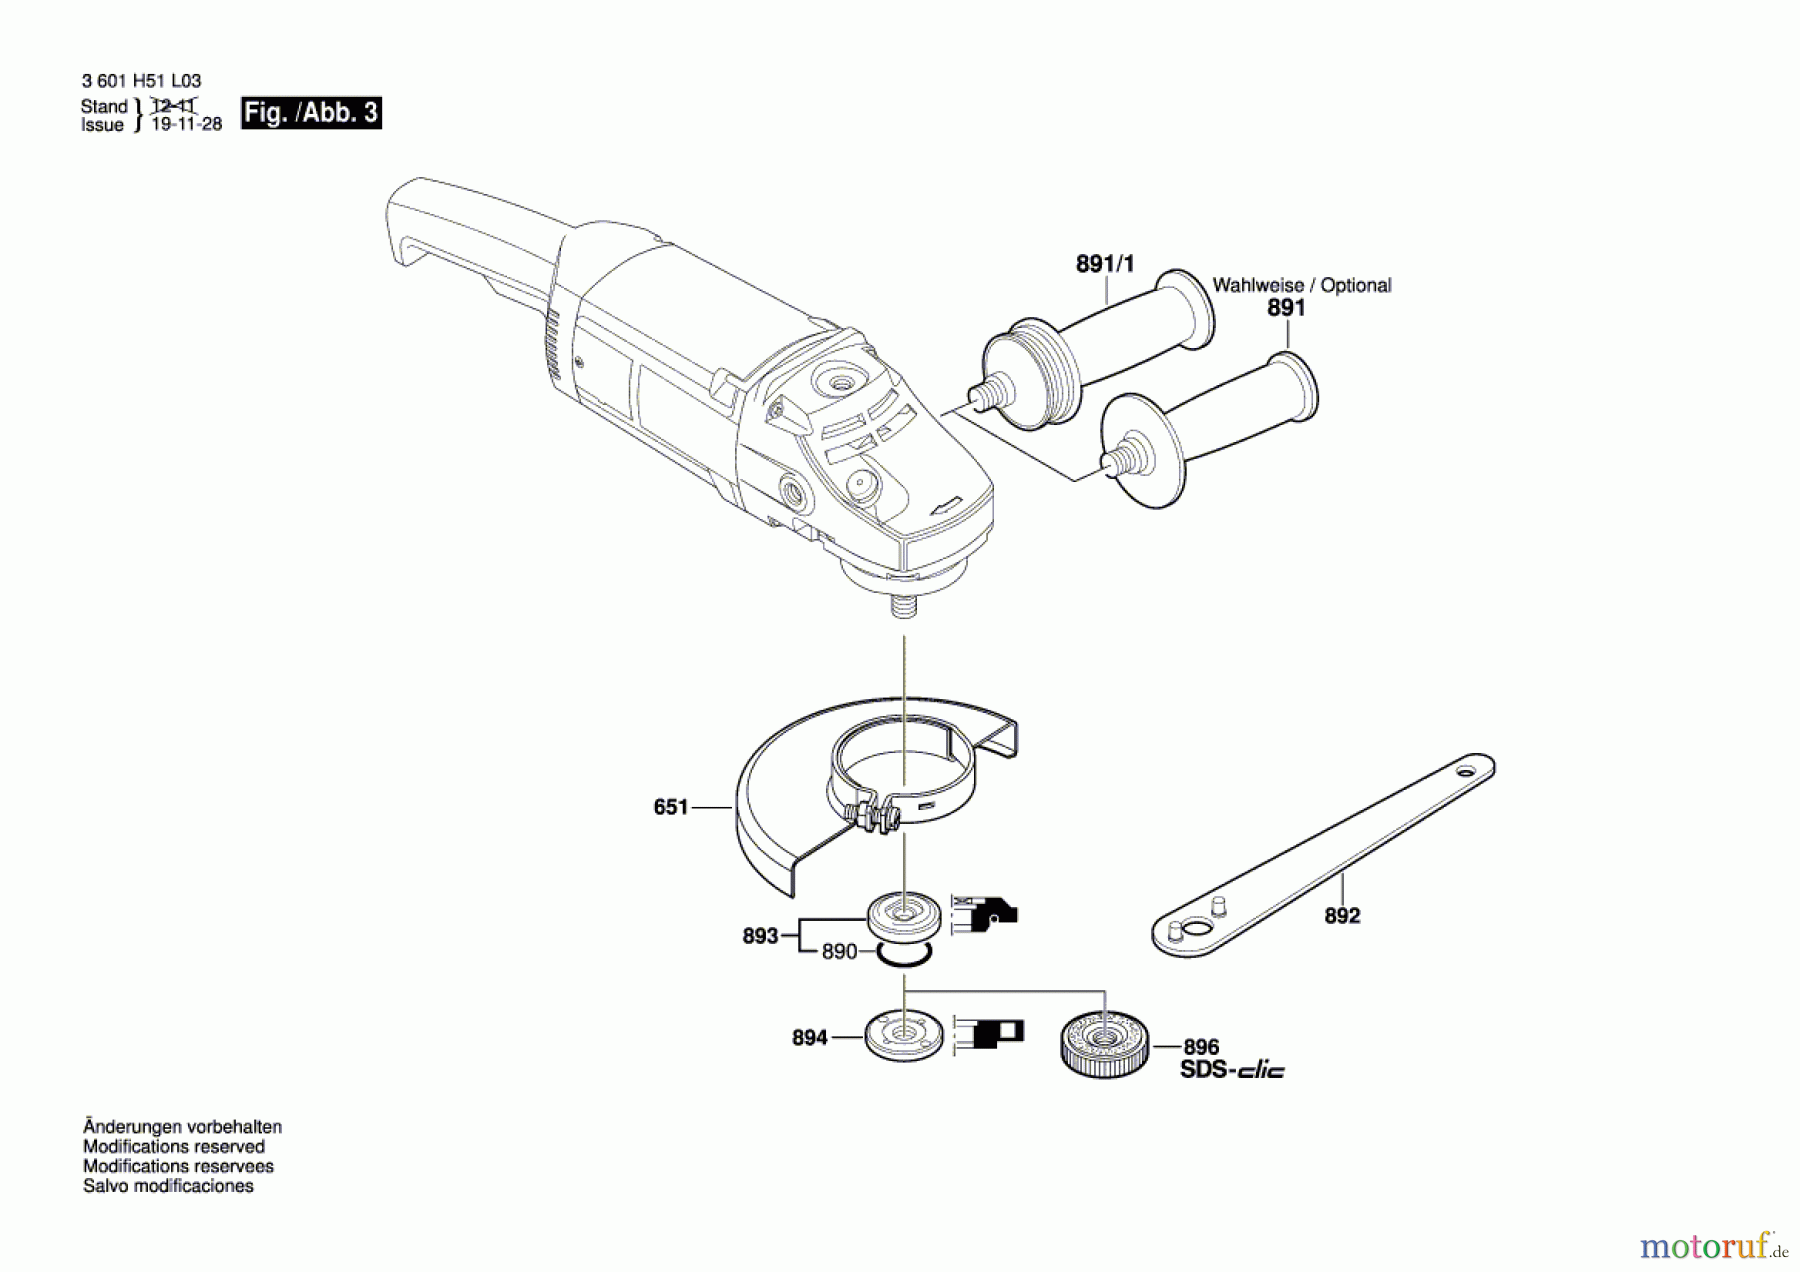  Bosch Werkzeug Winkelschleifer GWS 21-180 H Seite 3